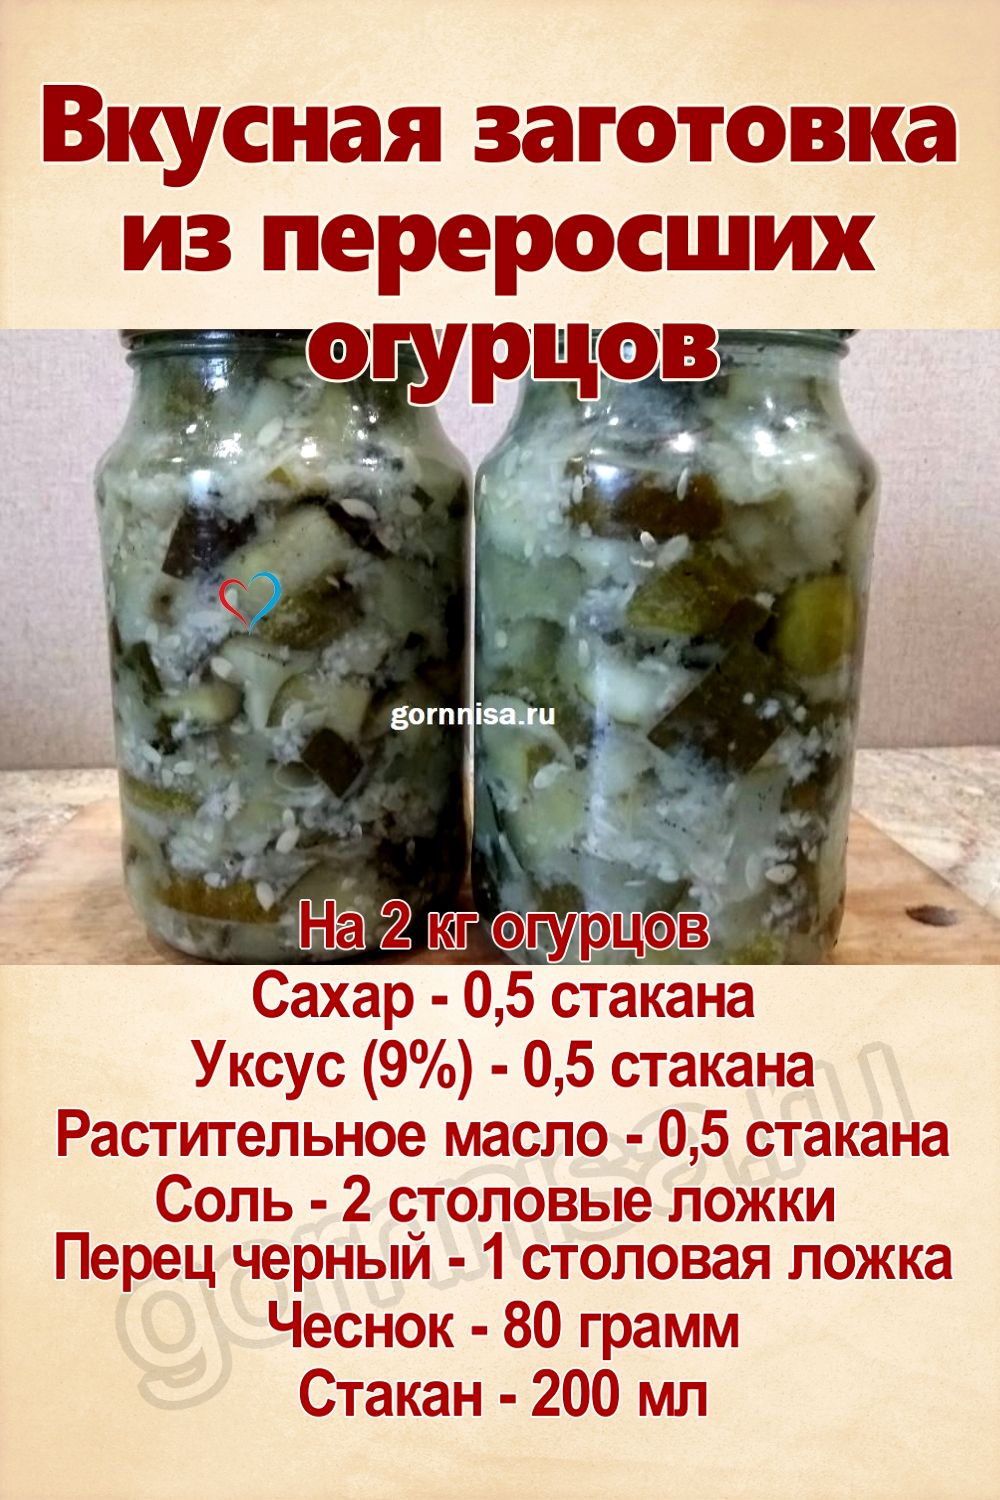 Рецепт недели - Вкусная заготовка из переросших огурцов https://gornnisa.ru/